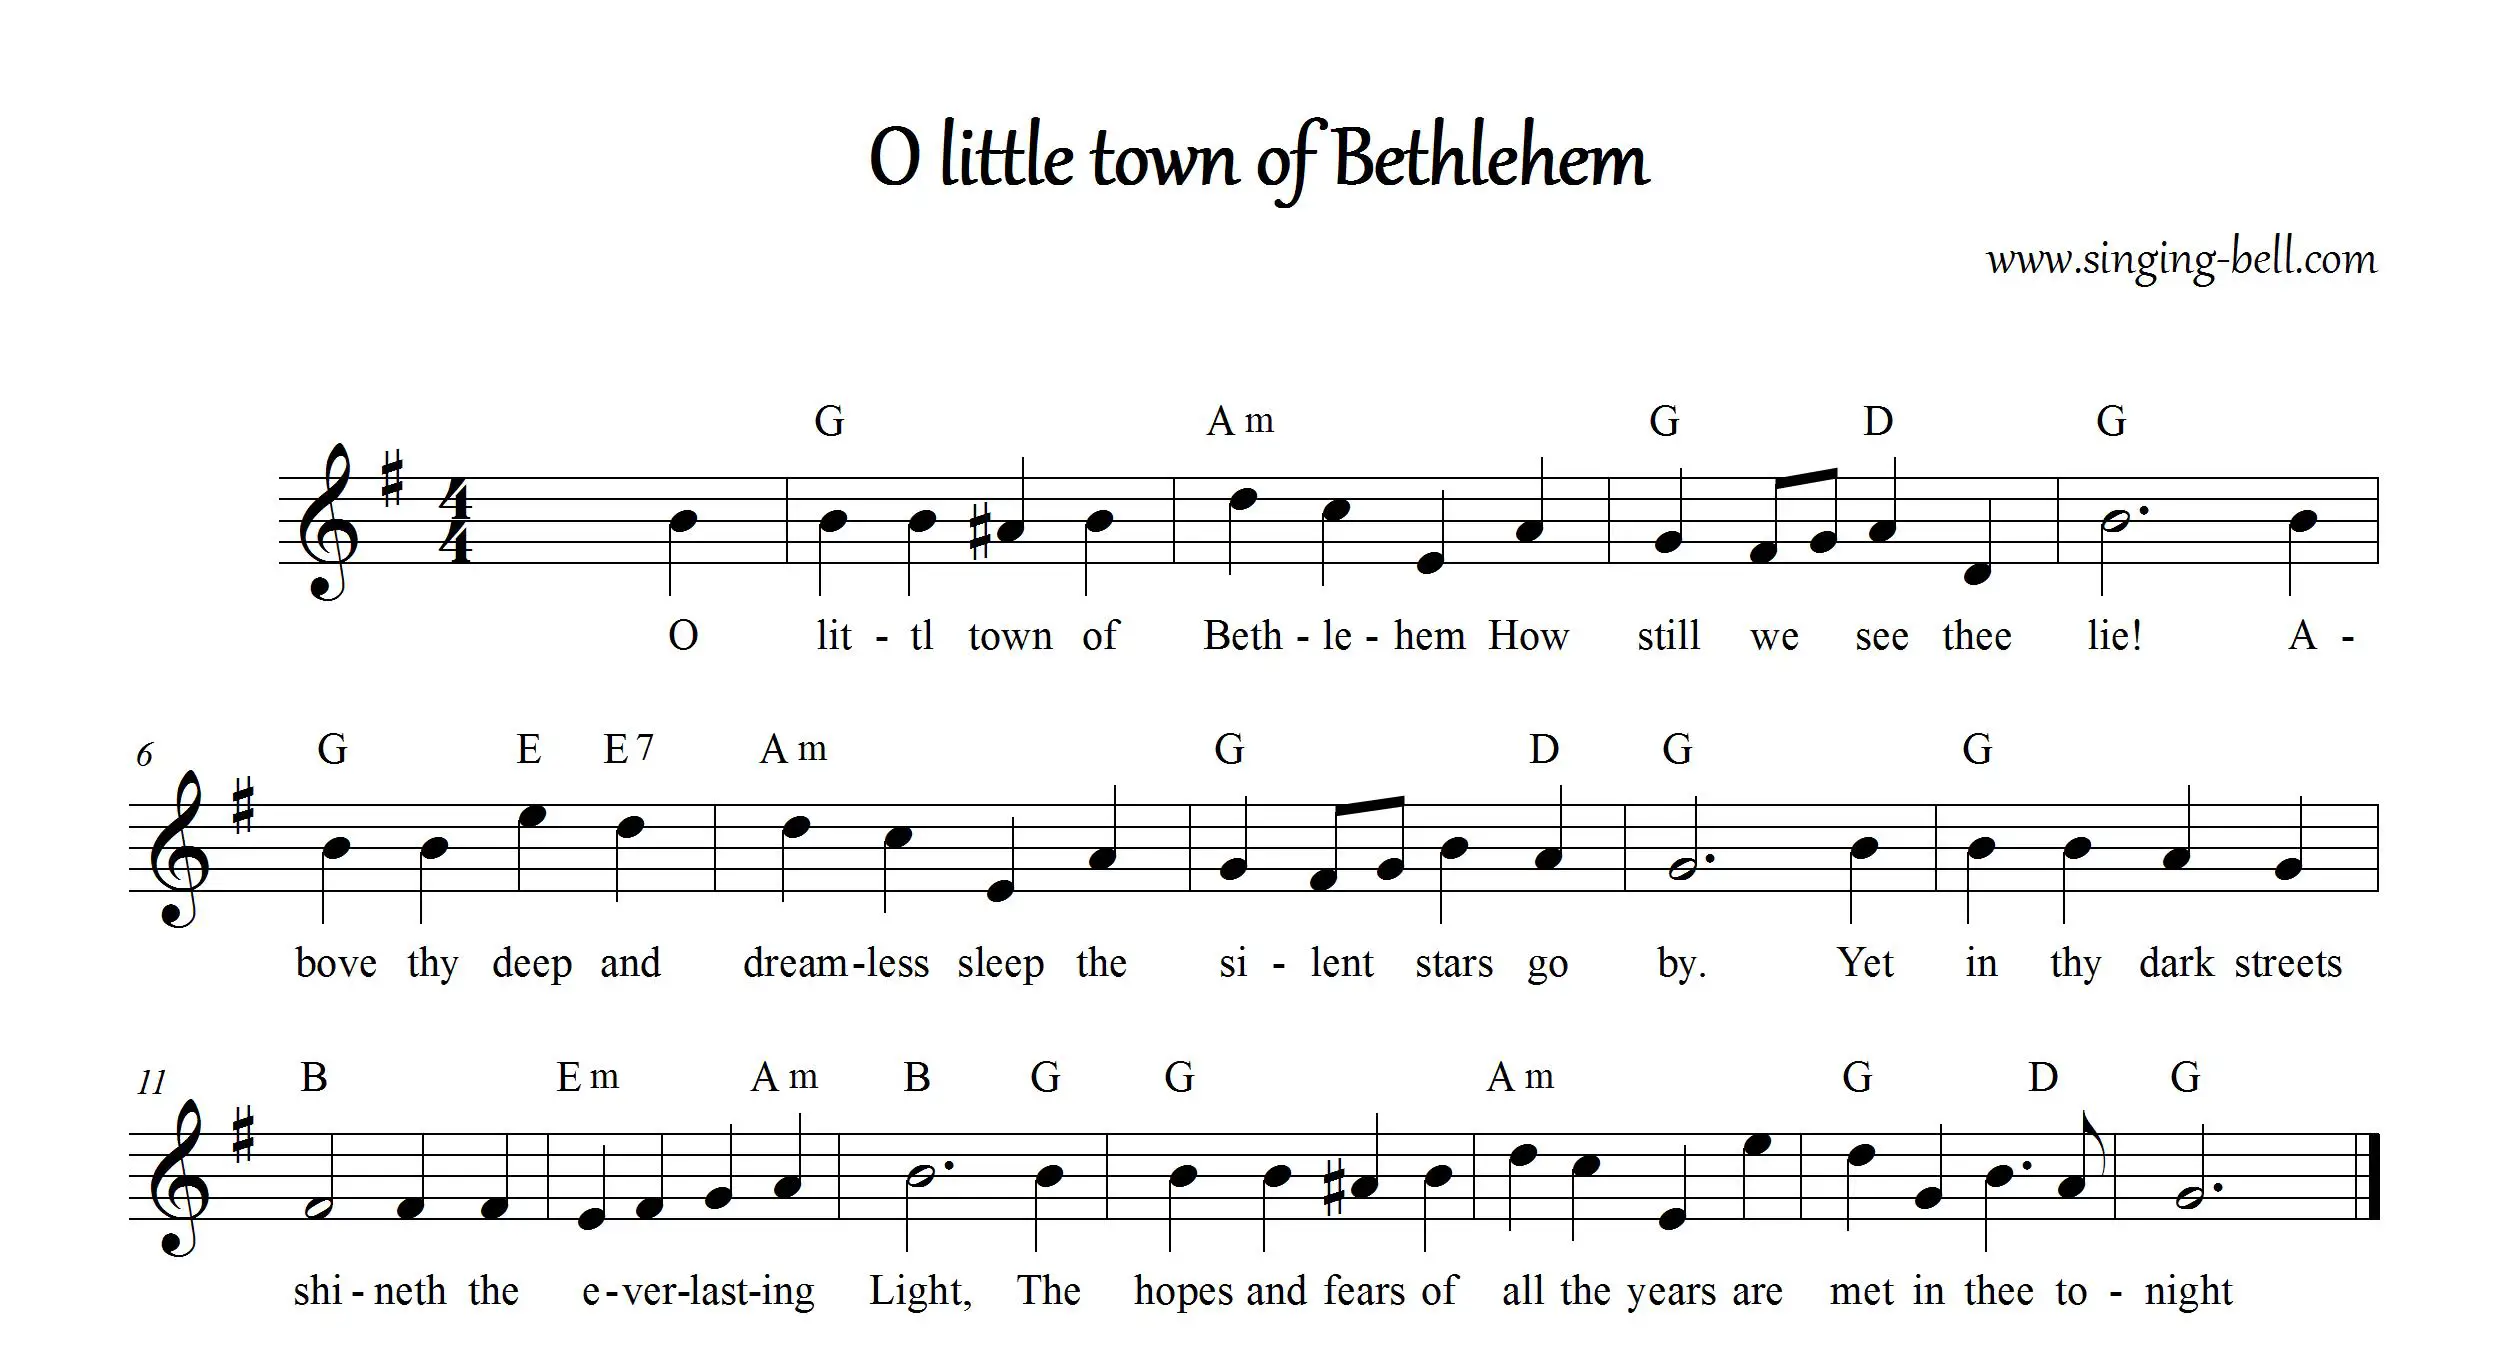 O Little town of Bethlehem sheet music in G